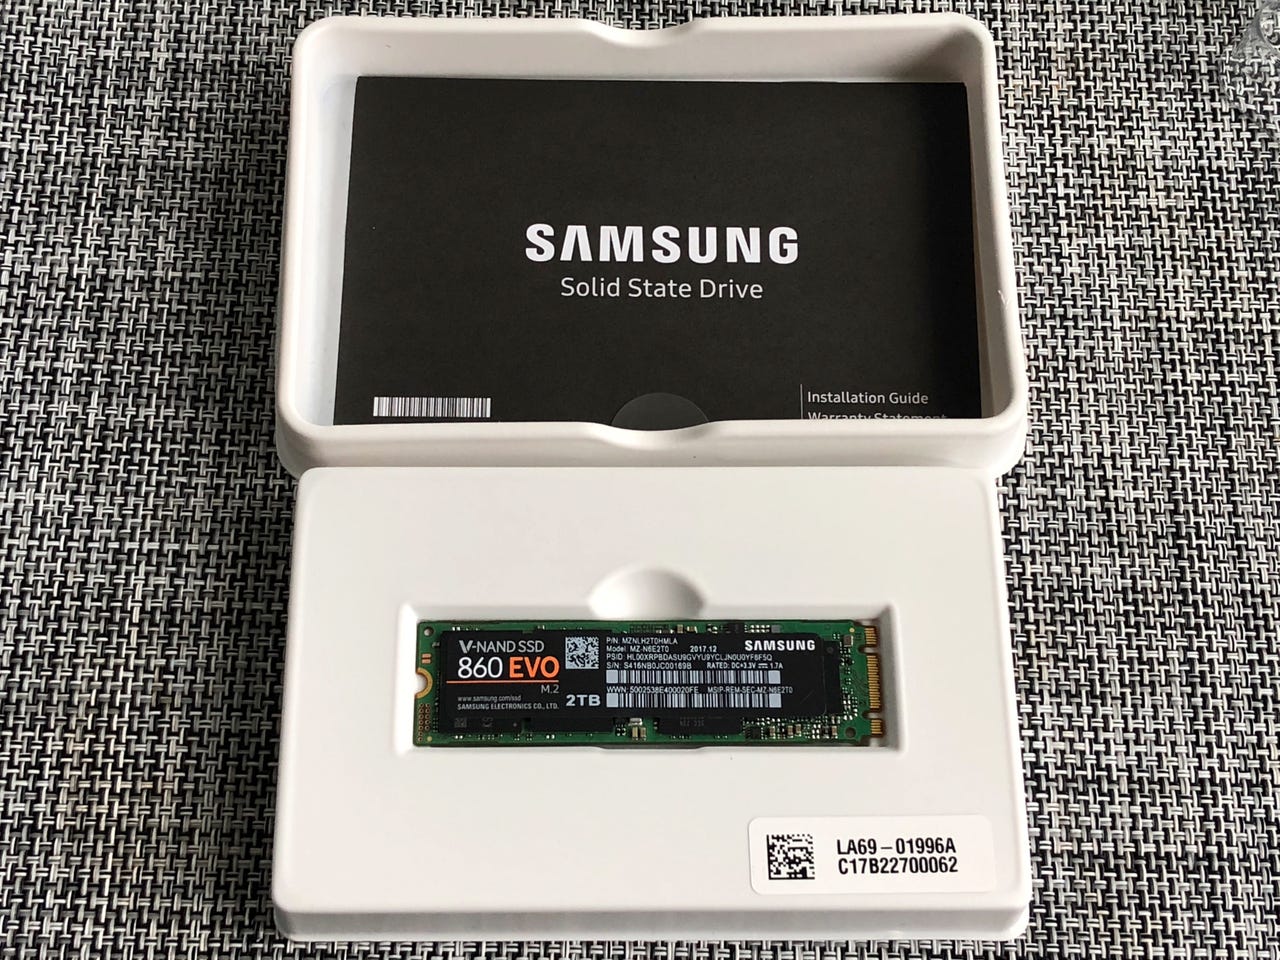 Samsung 860 EVO V-NAND SSD